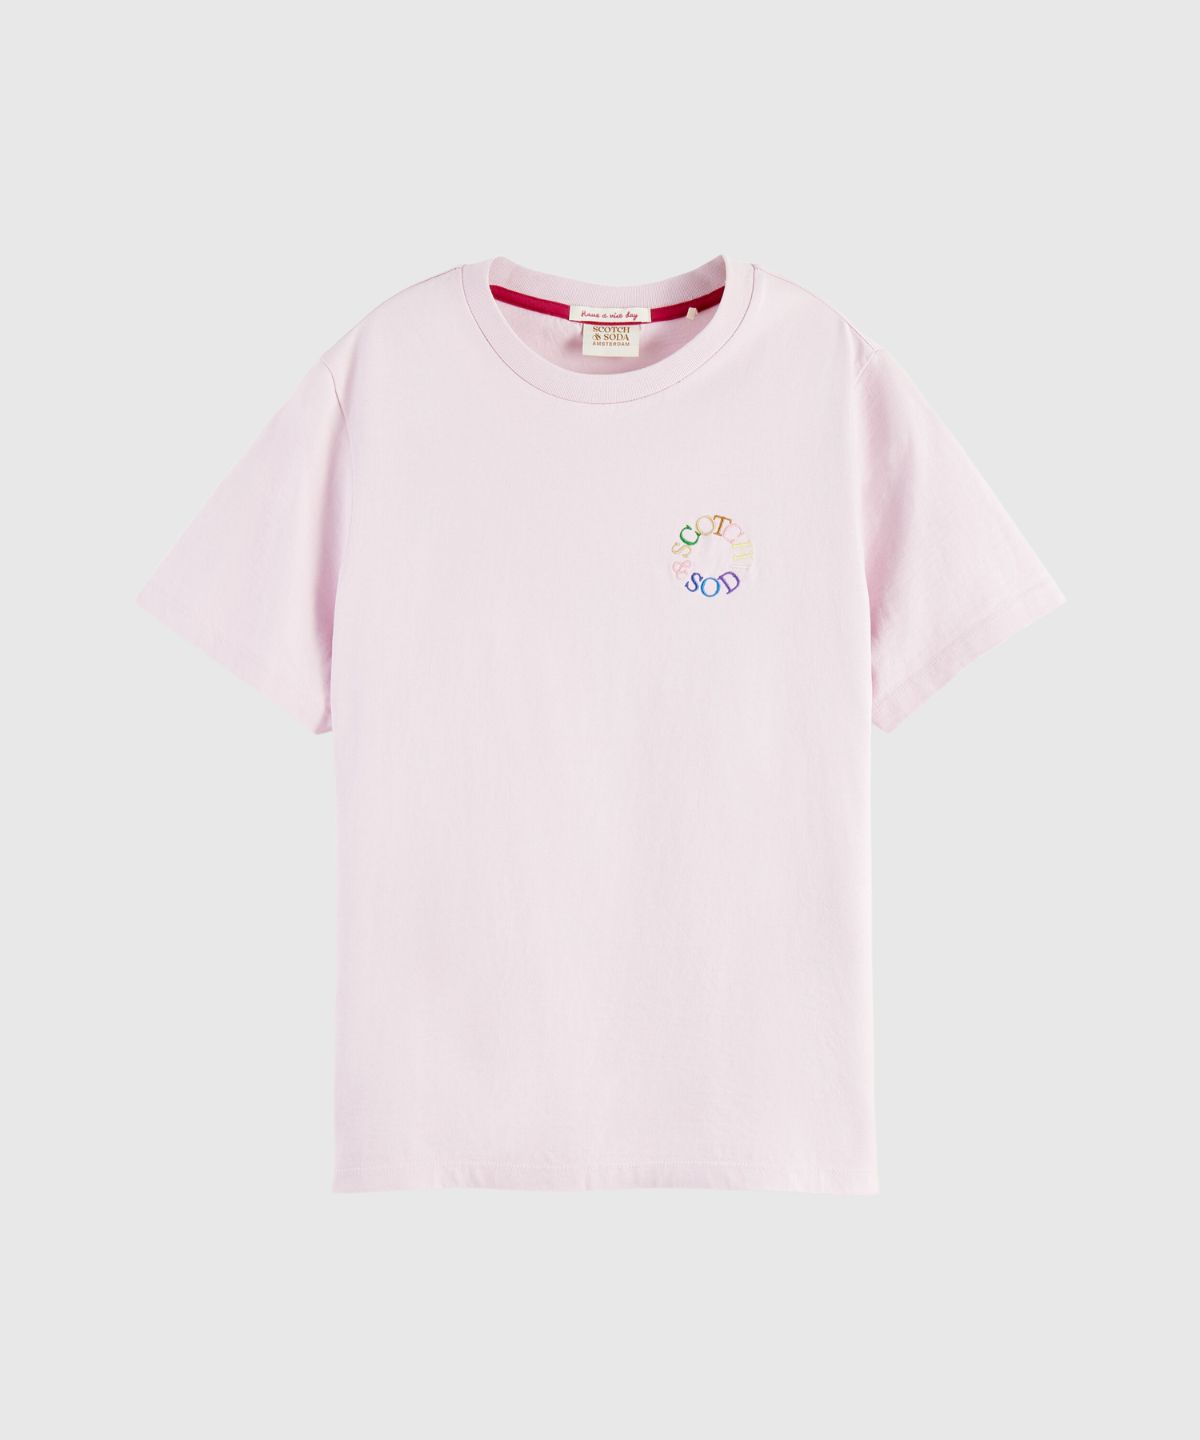 Circle logo regular-fit T-shirt in Organic Cotton